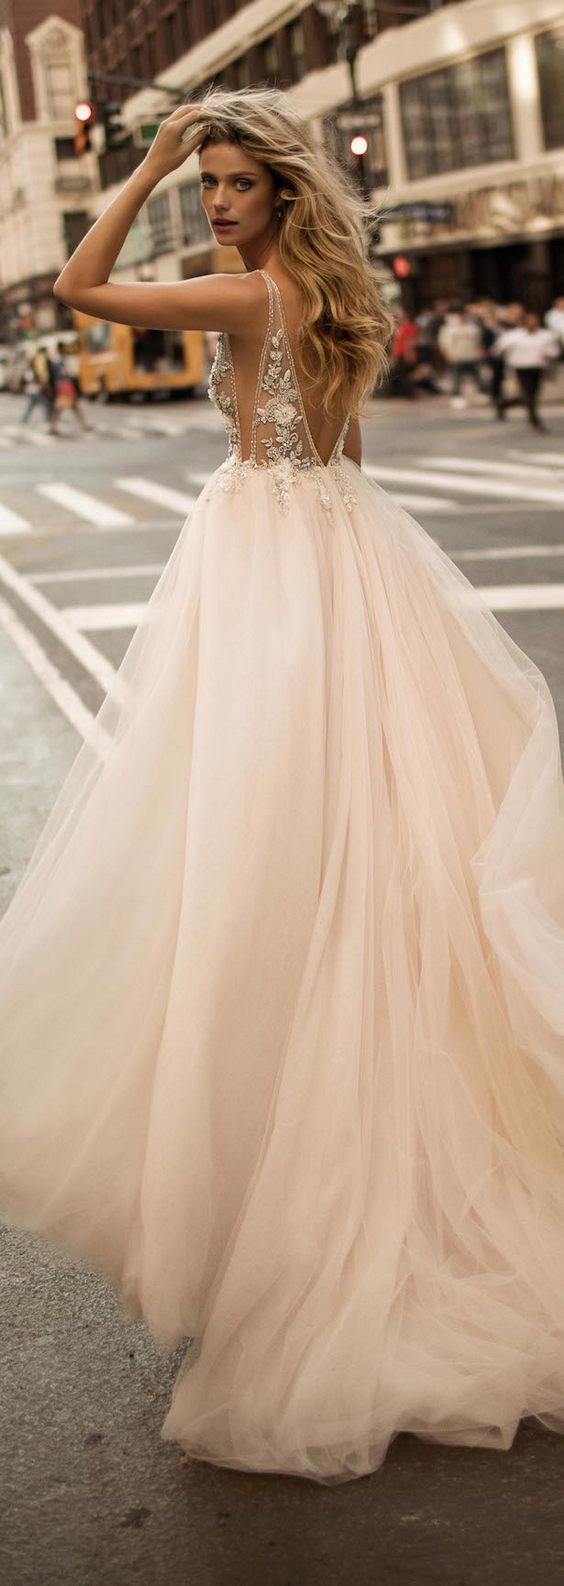 Berta Bridal Fall Wedding Dresses 2017